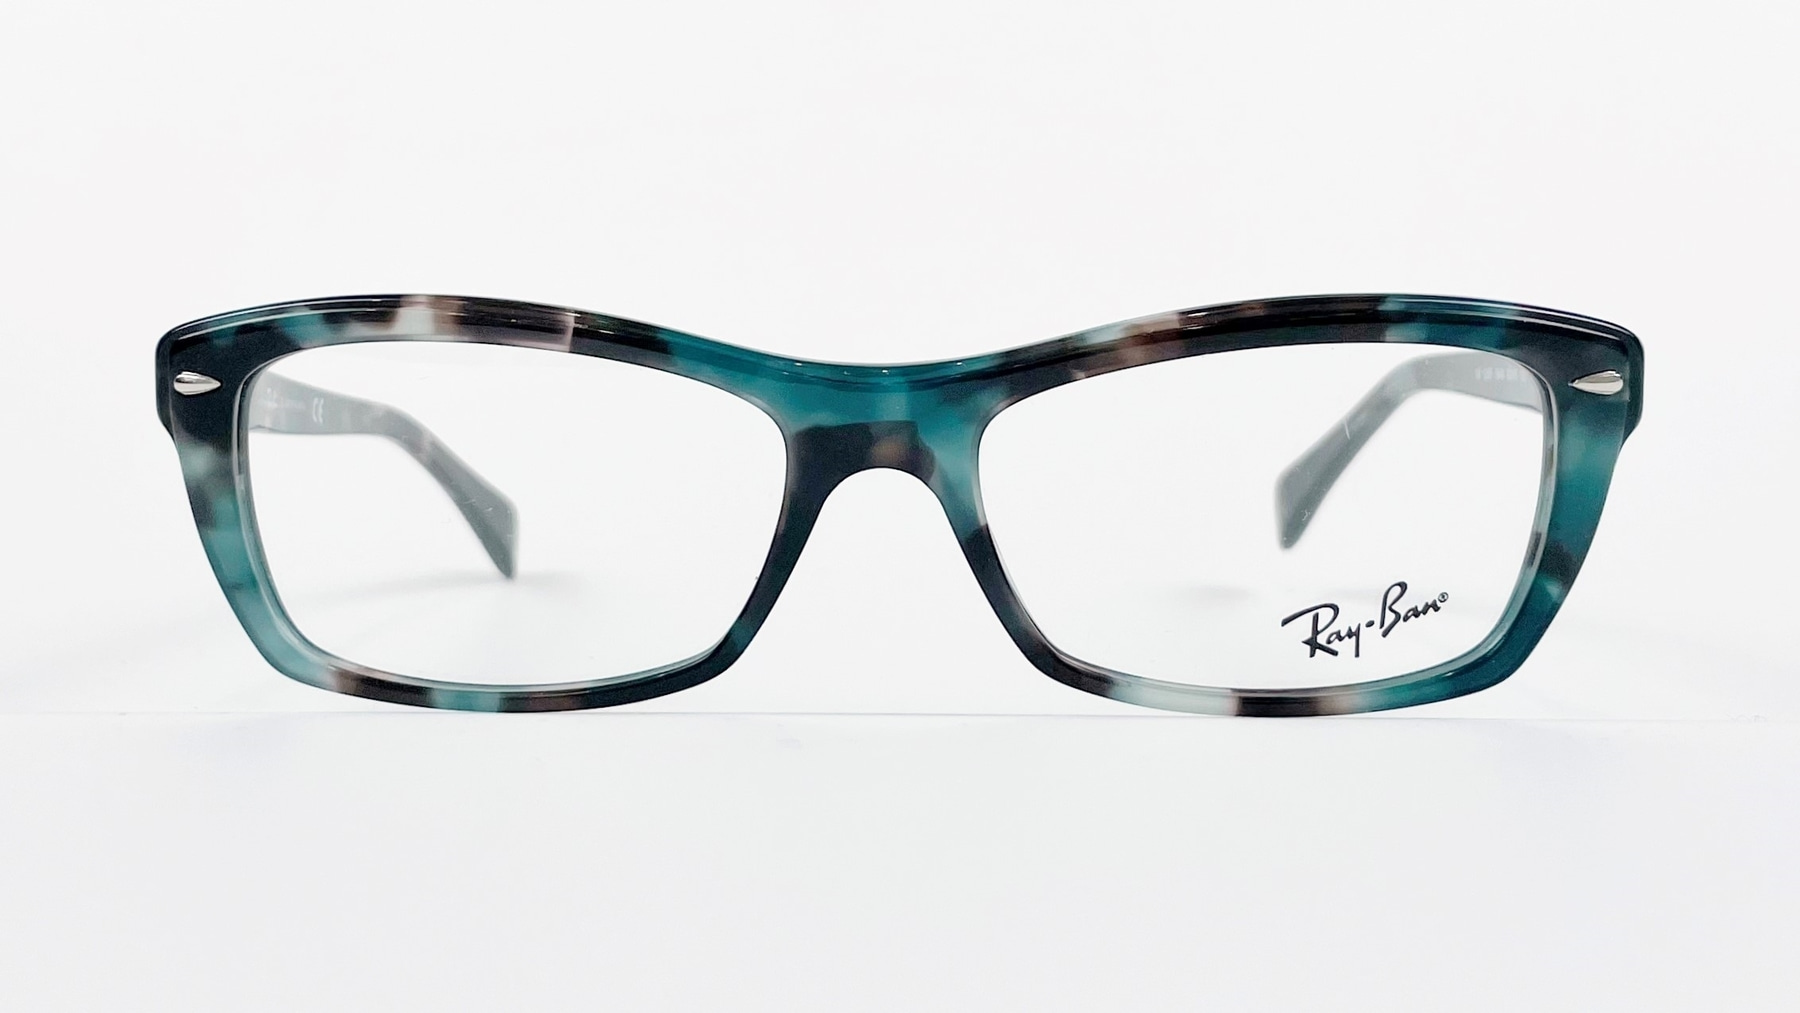 RayBan RB5255 5949, Korean glasses, sunglasses, eyeglasses, glasses